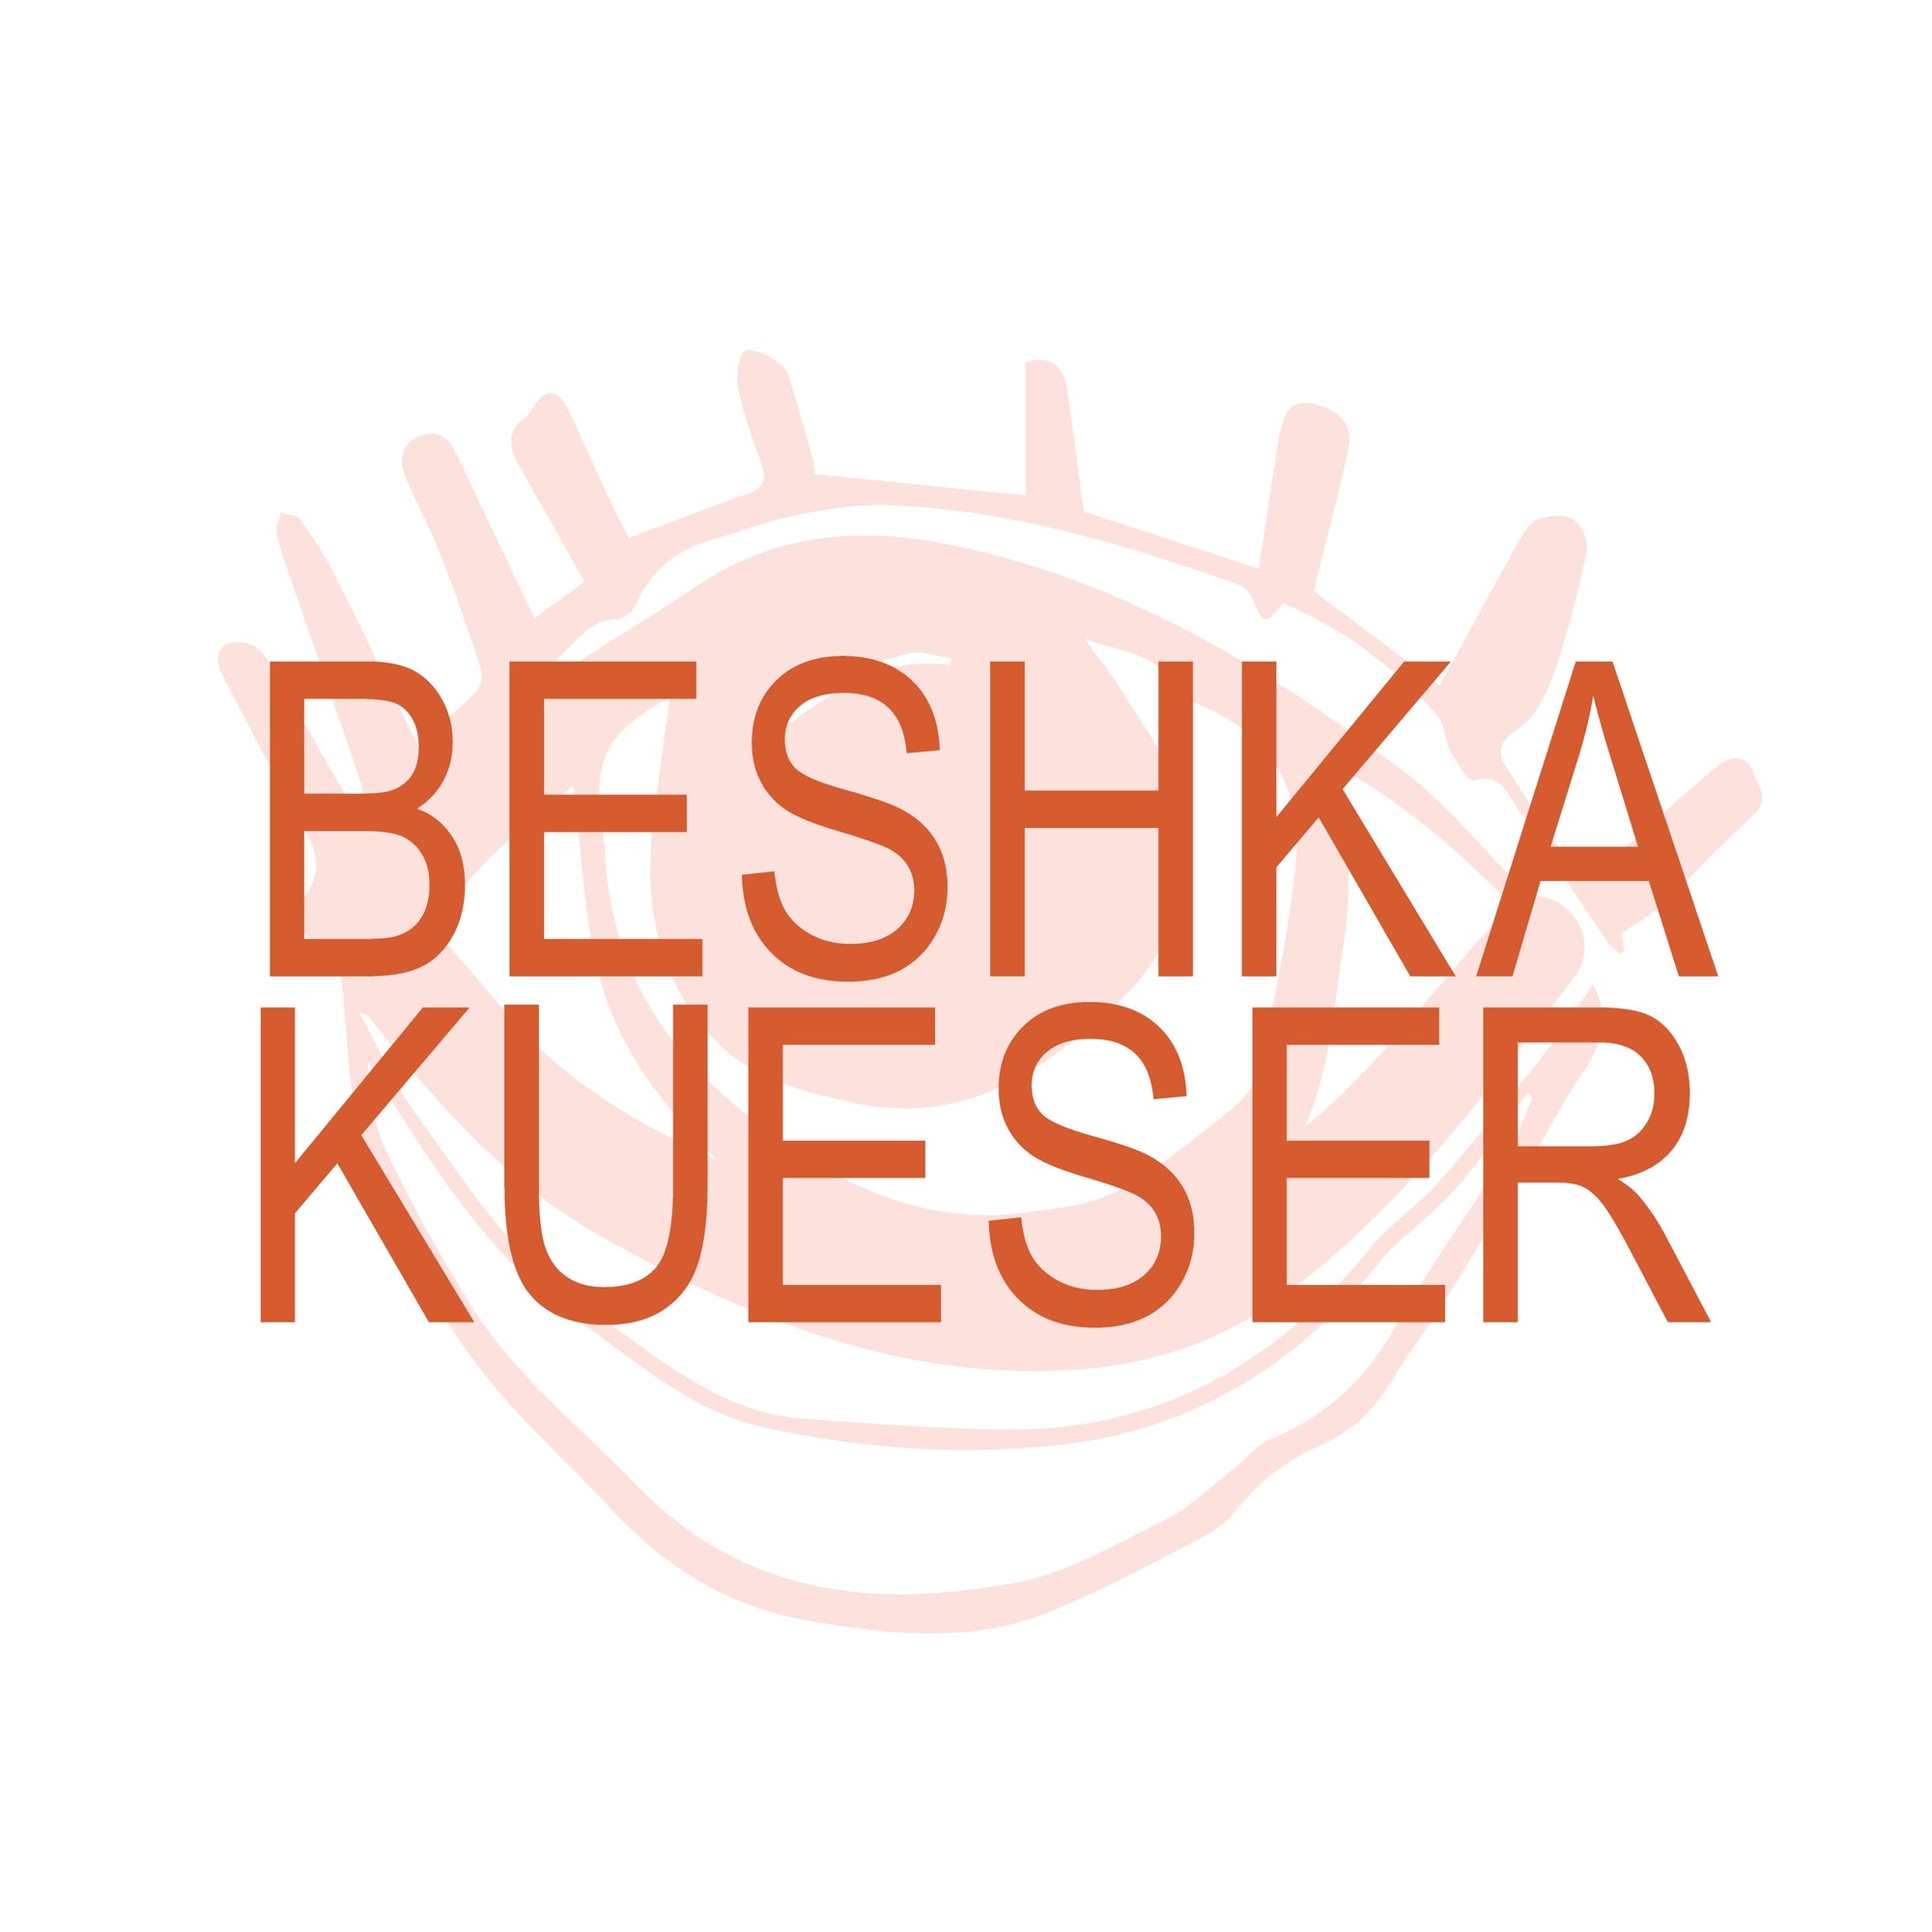 Designs by Beshka Kueser